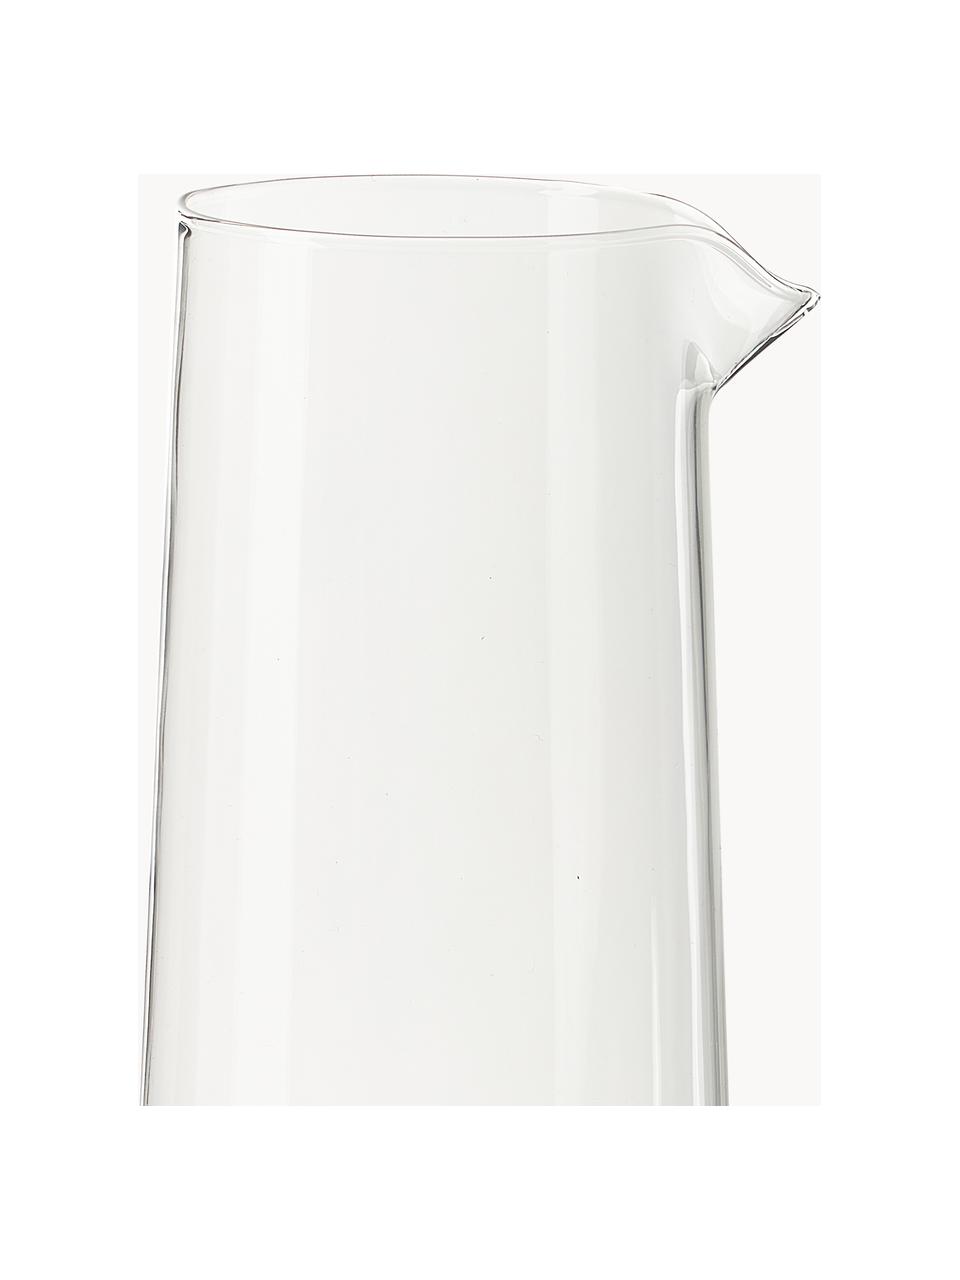 Mondgeblazen waterkaraf Hadley, 1.3 L, Borosilicaatglas, mondgeblazen 

Ontdek de veelzijdigheid van servies van borosilicaatglas thuis! 
Borosilicaatglas is een hoogwaardig, betrouwbaar en robuust materiaal. Het wordt gekenmerkt door zijn uitzonderlijke hittebestendigheid en is daarom bestand tegen extreme temperaturen. Het is daarom bijzonder geschikt voor warme dranken. Vergeleken met conventioneel glas is borosilicaatglas door zijn samenstelling en structuur beter bestand tegen breken en barsten., Transparant, oranje, 1.3 L